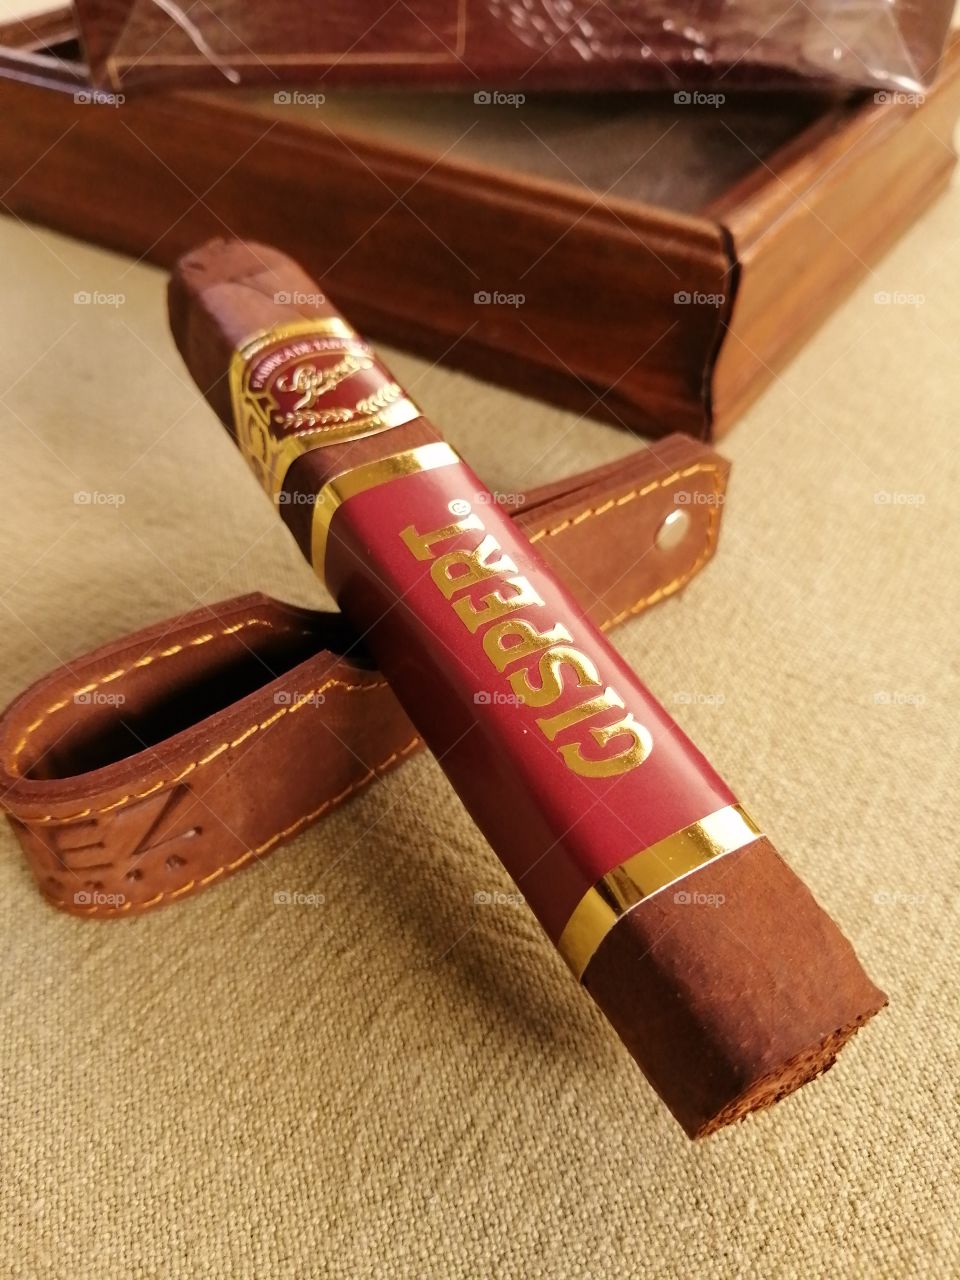 Gispert cigars